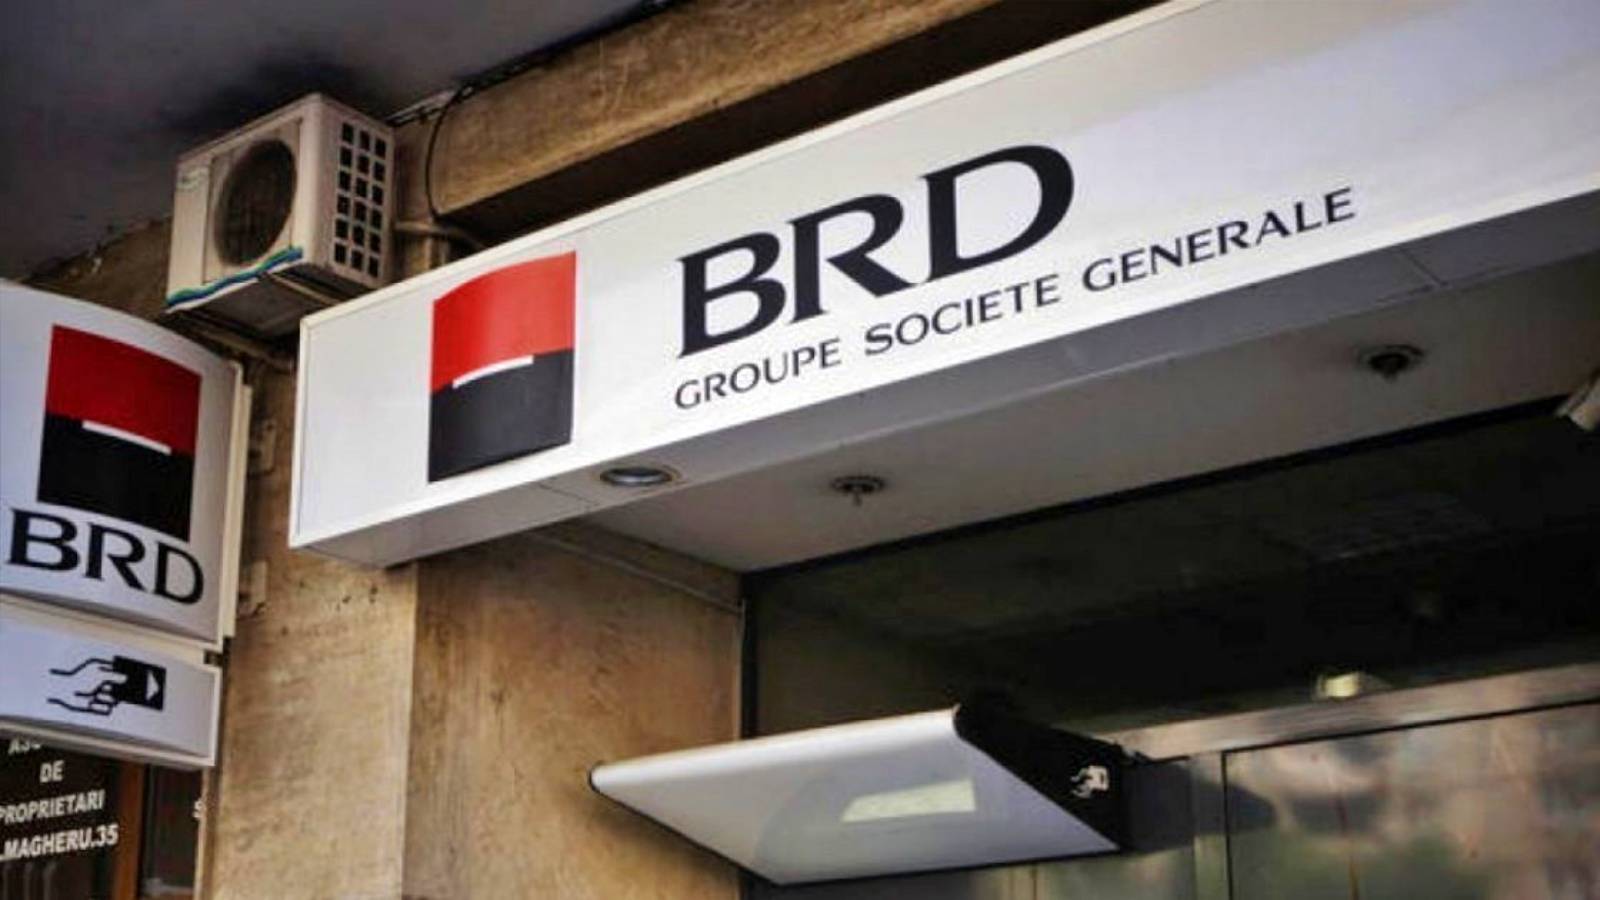 BRD Roumanie modifie officiellement ses services de dernière minute pour les clients roumains